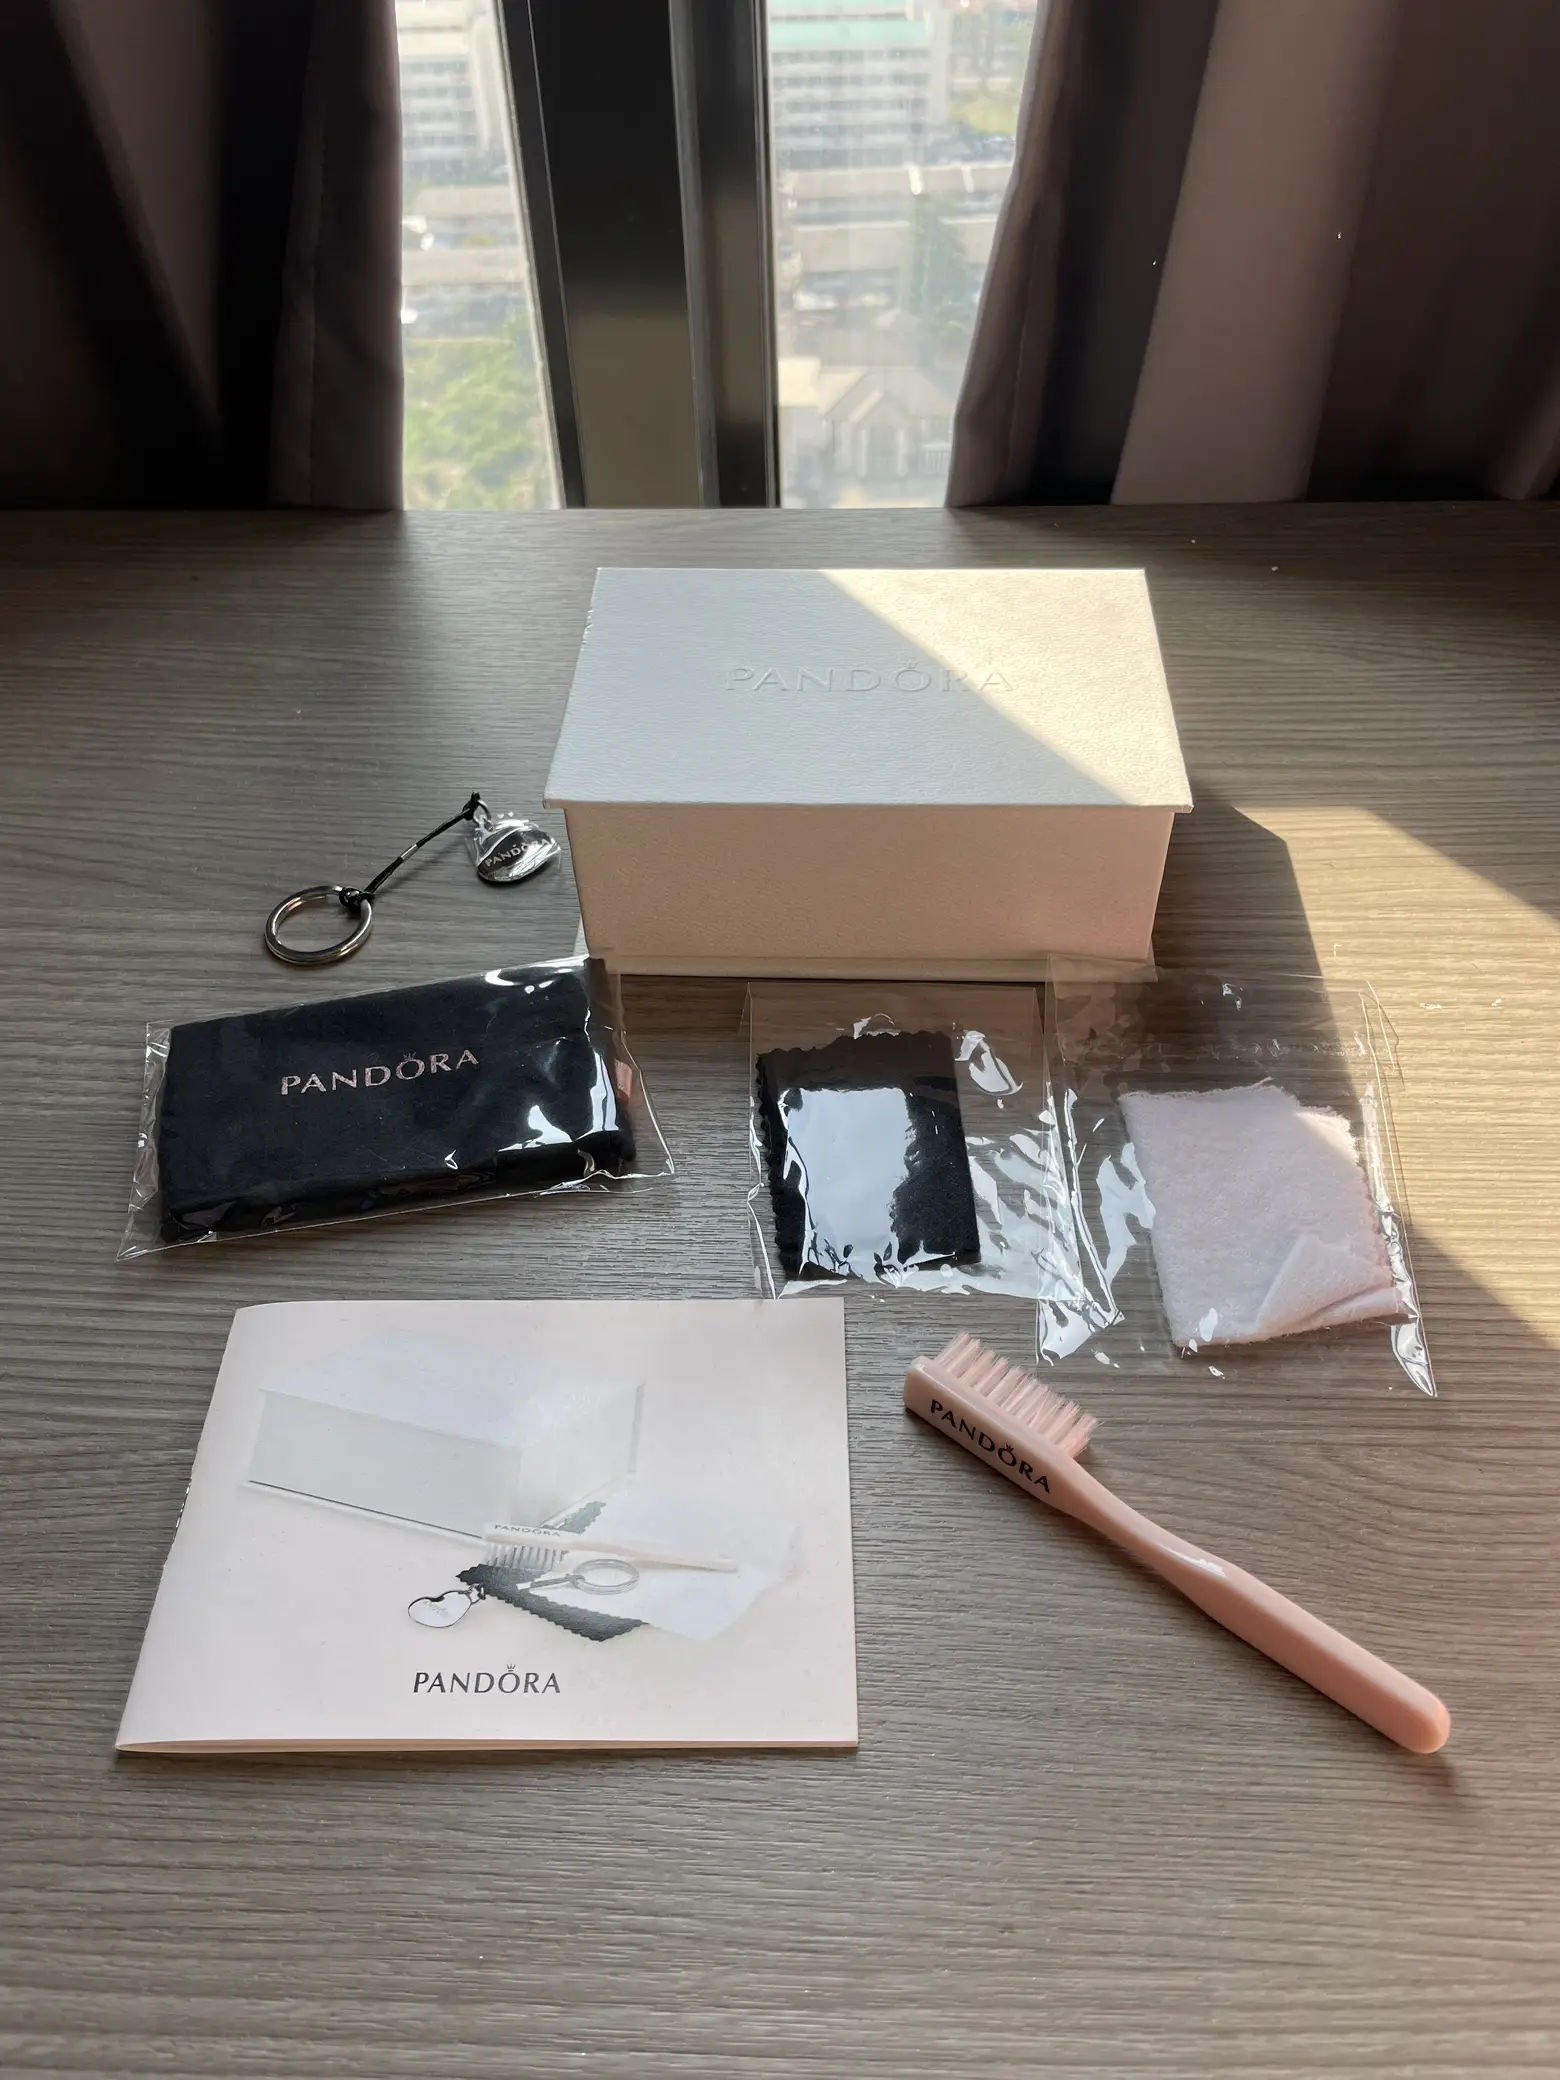 Pandora Jewelry Care Kit #PandoraJewelry